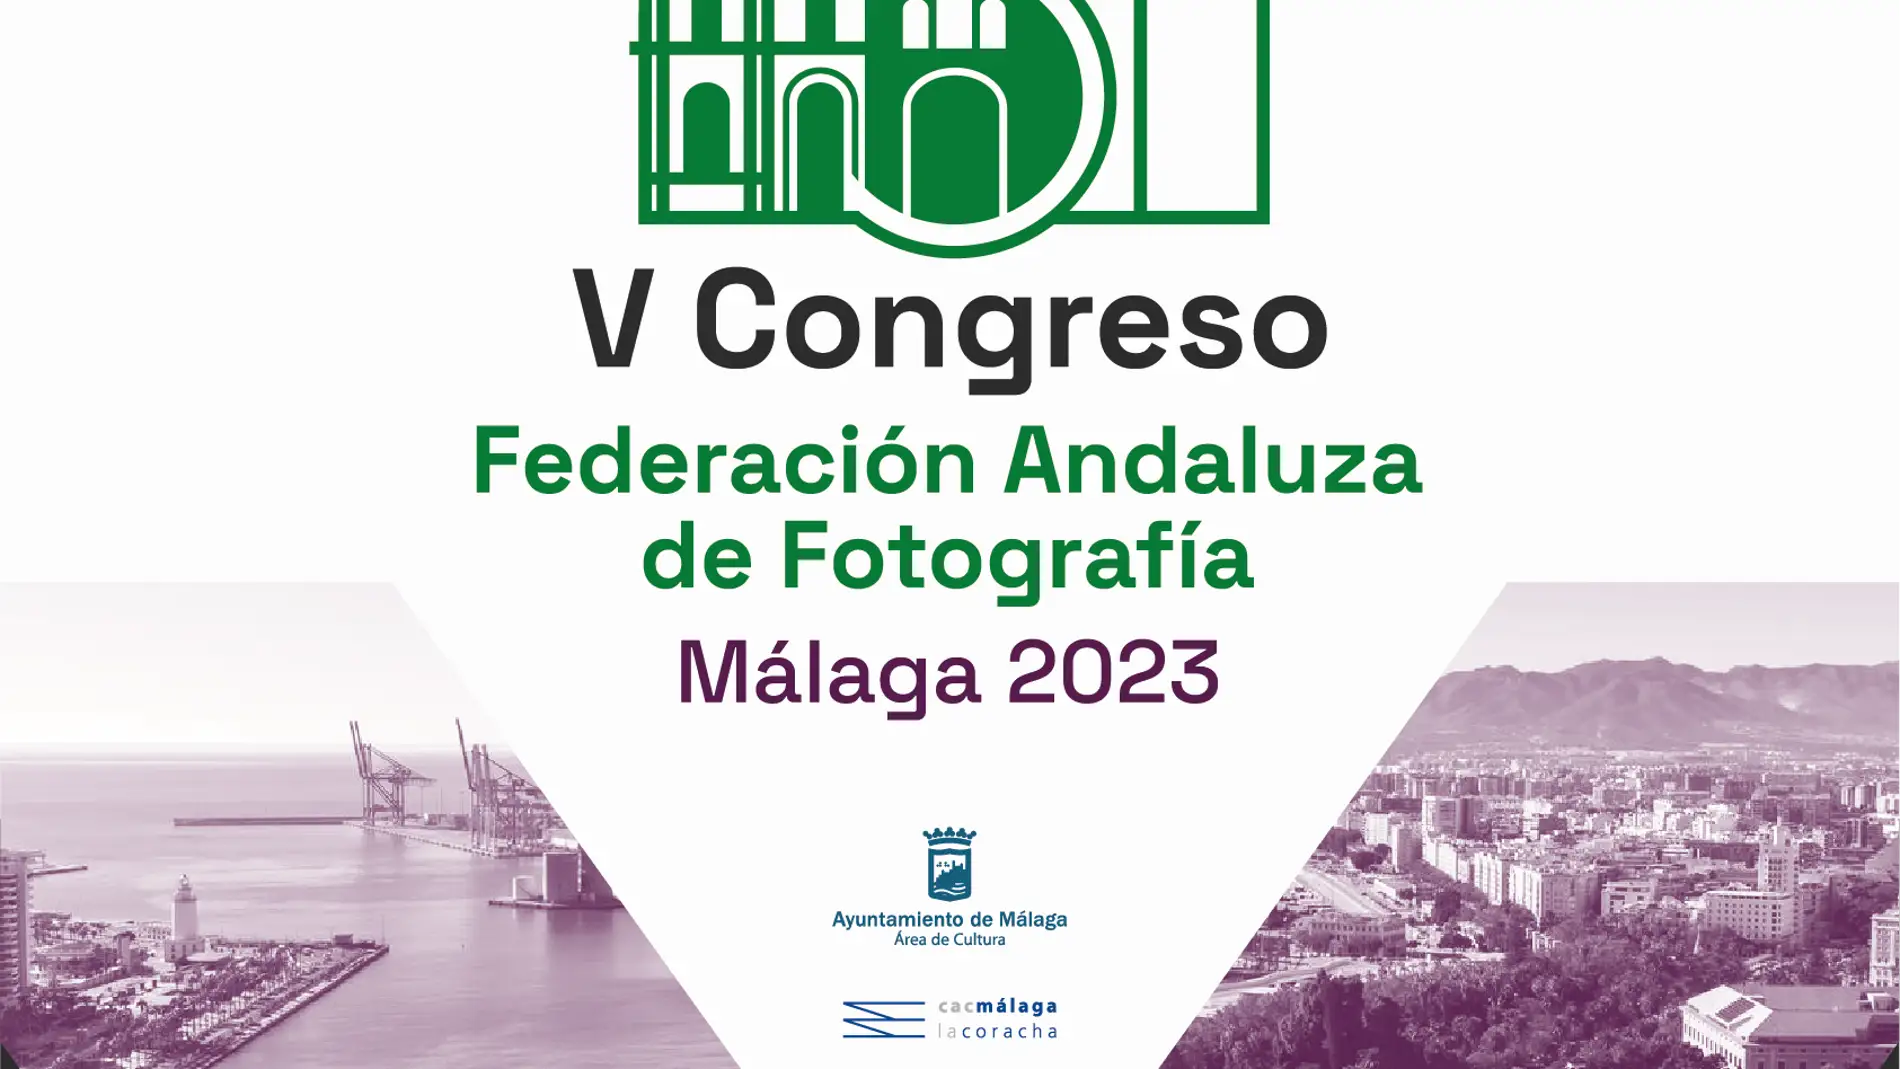 La Federación Andaluza de Fotografía celebra su quinto congreso anual en Málaga